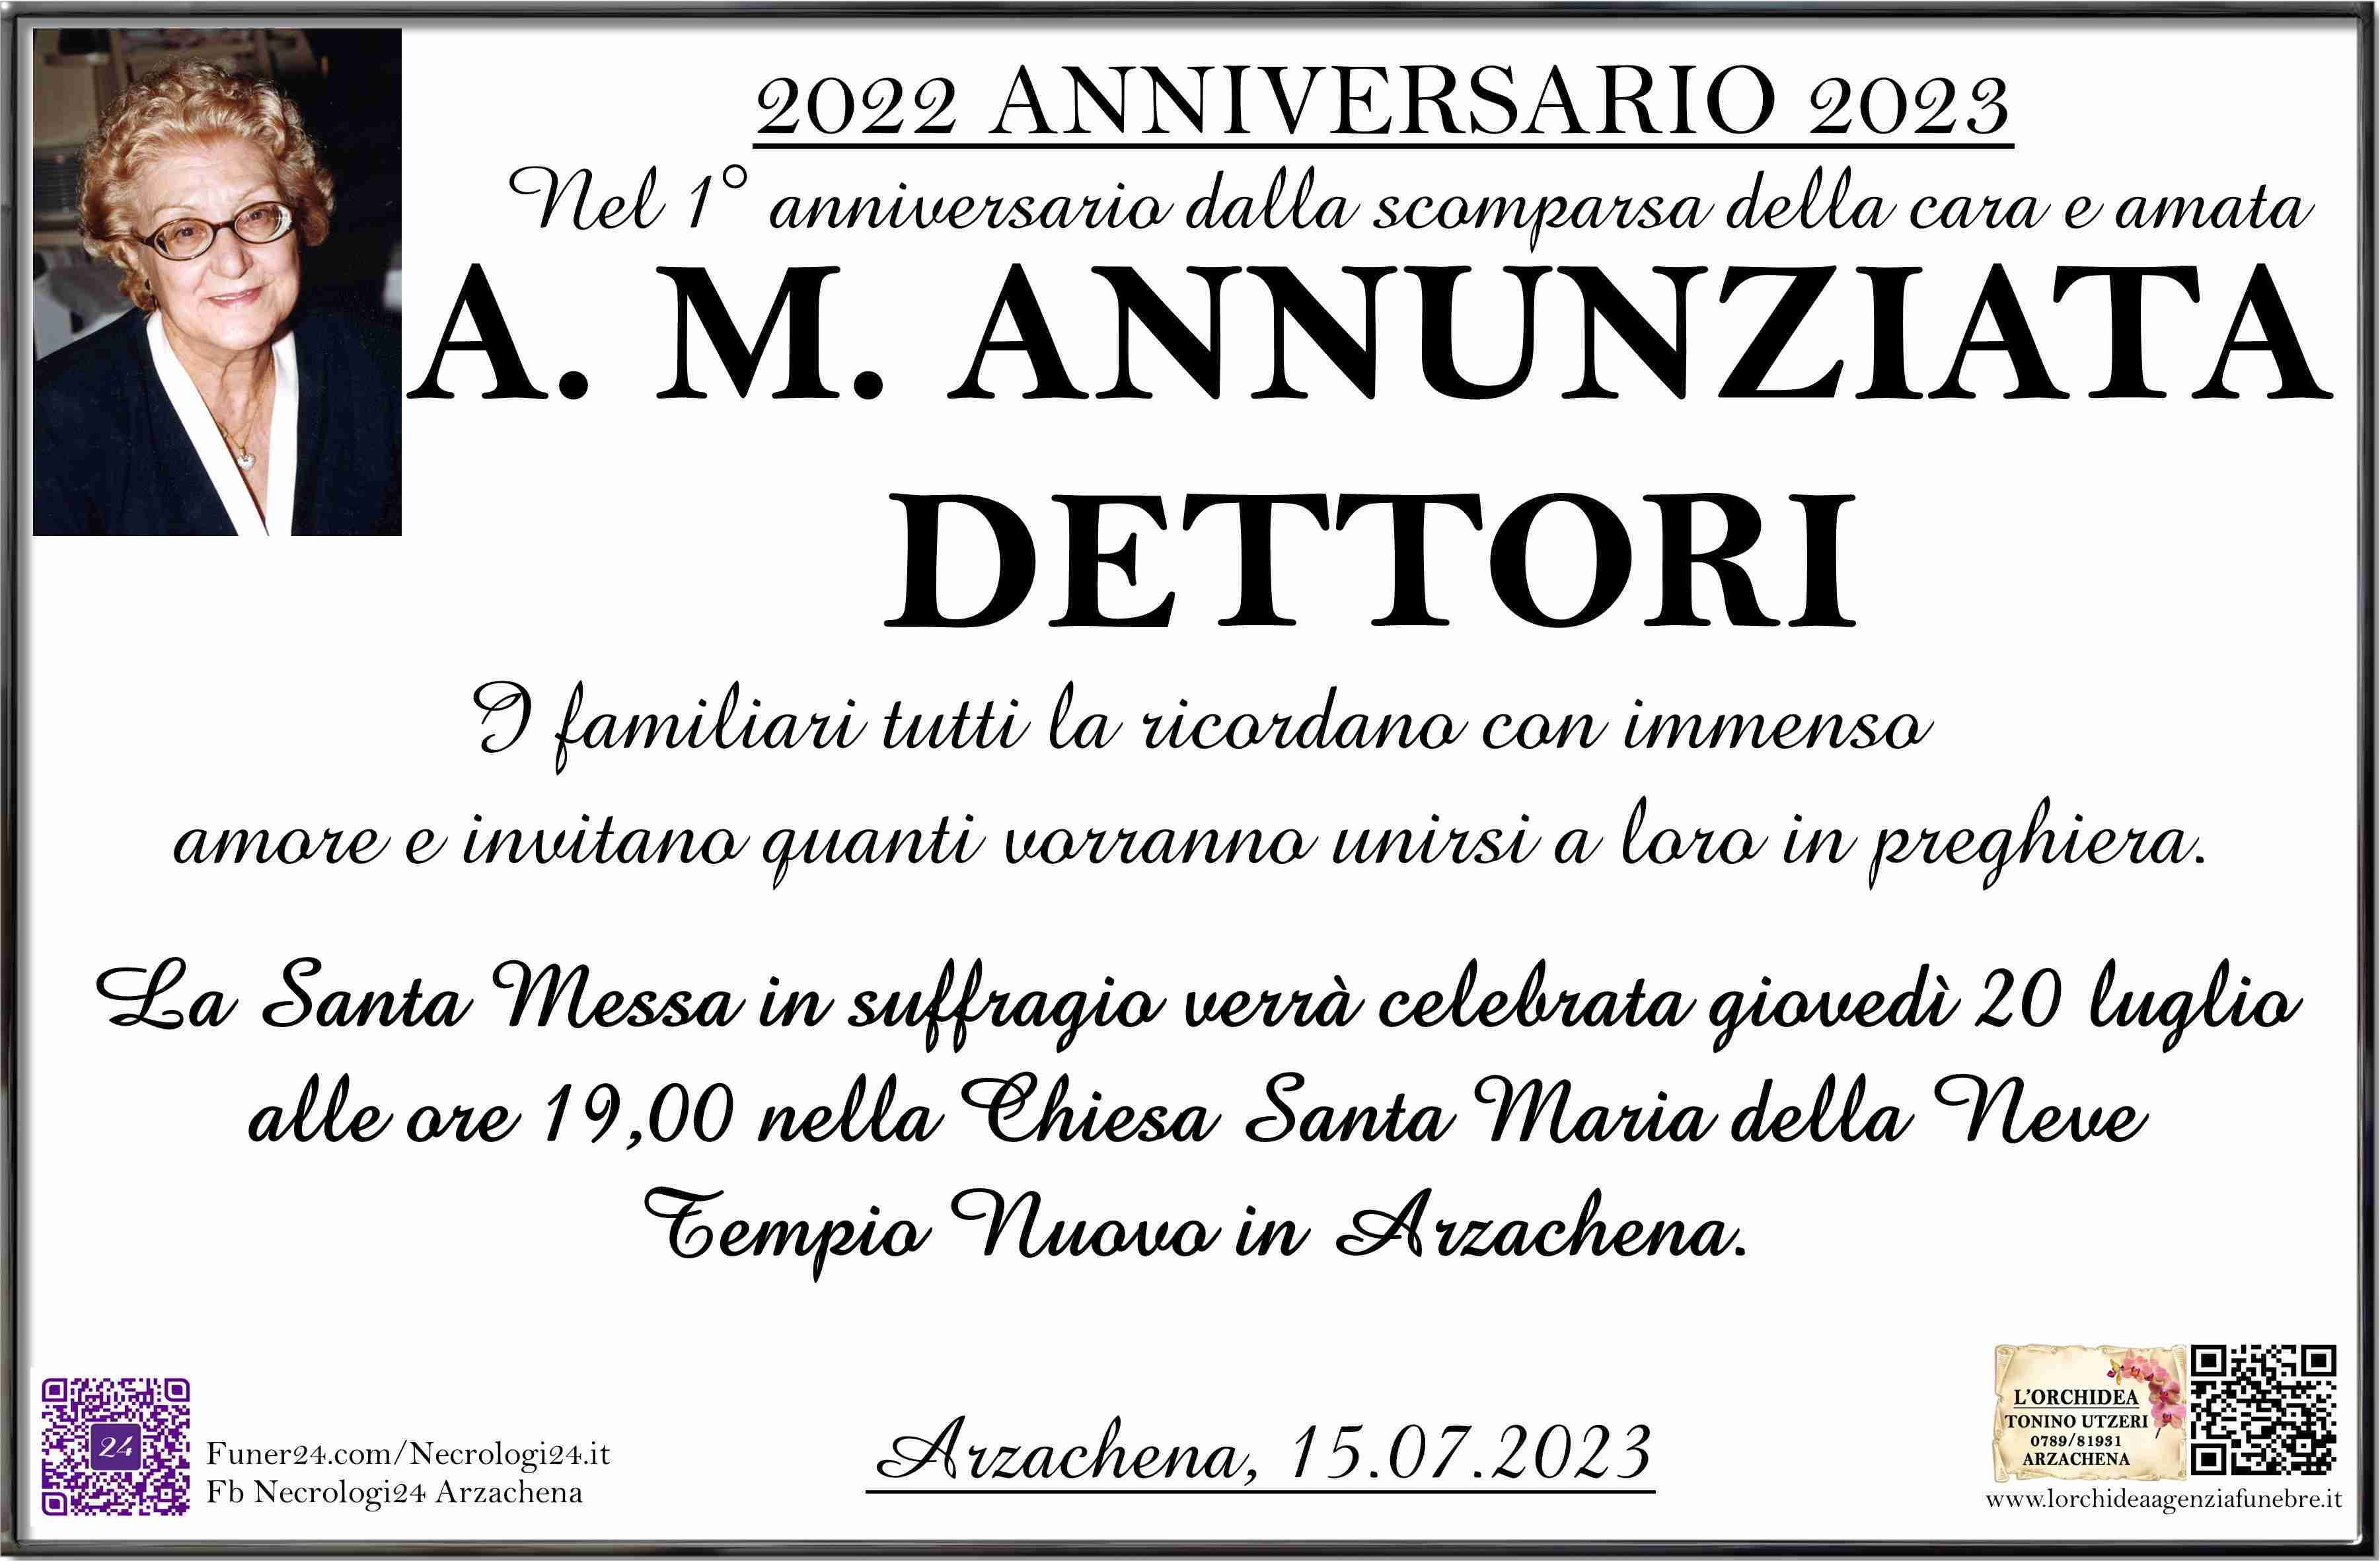 A. M. Annunziata Dettori